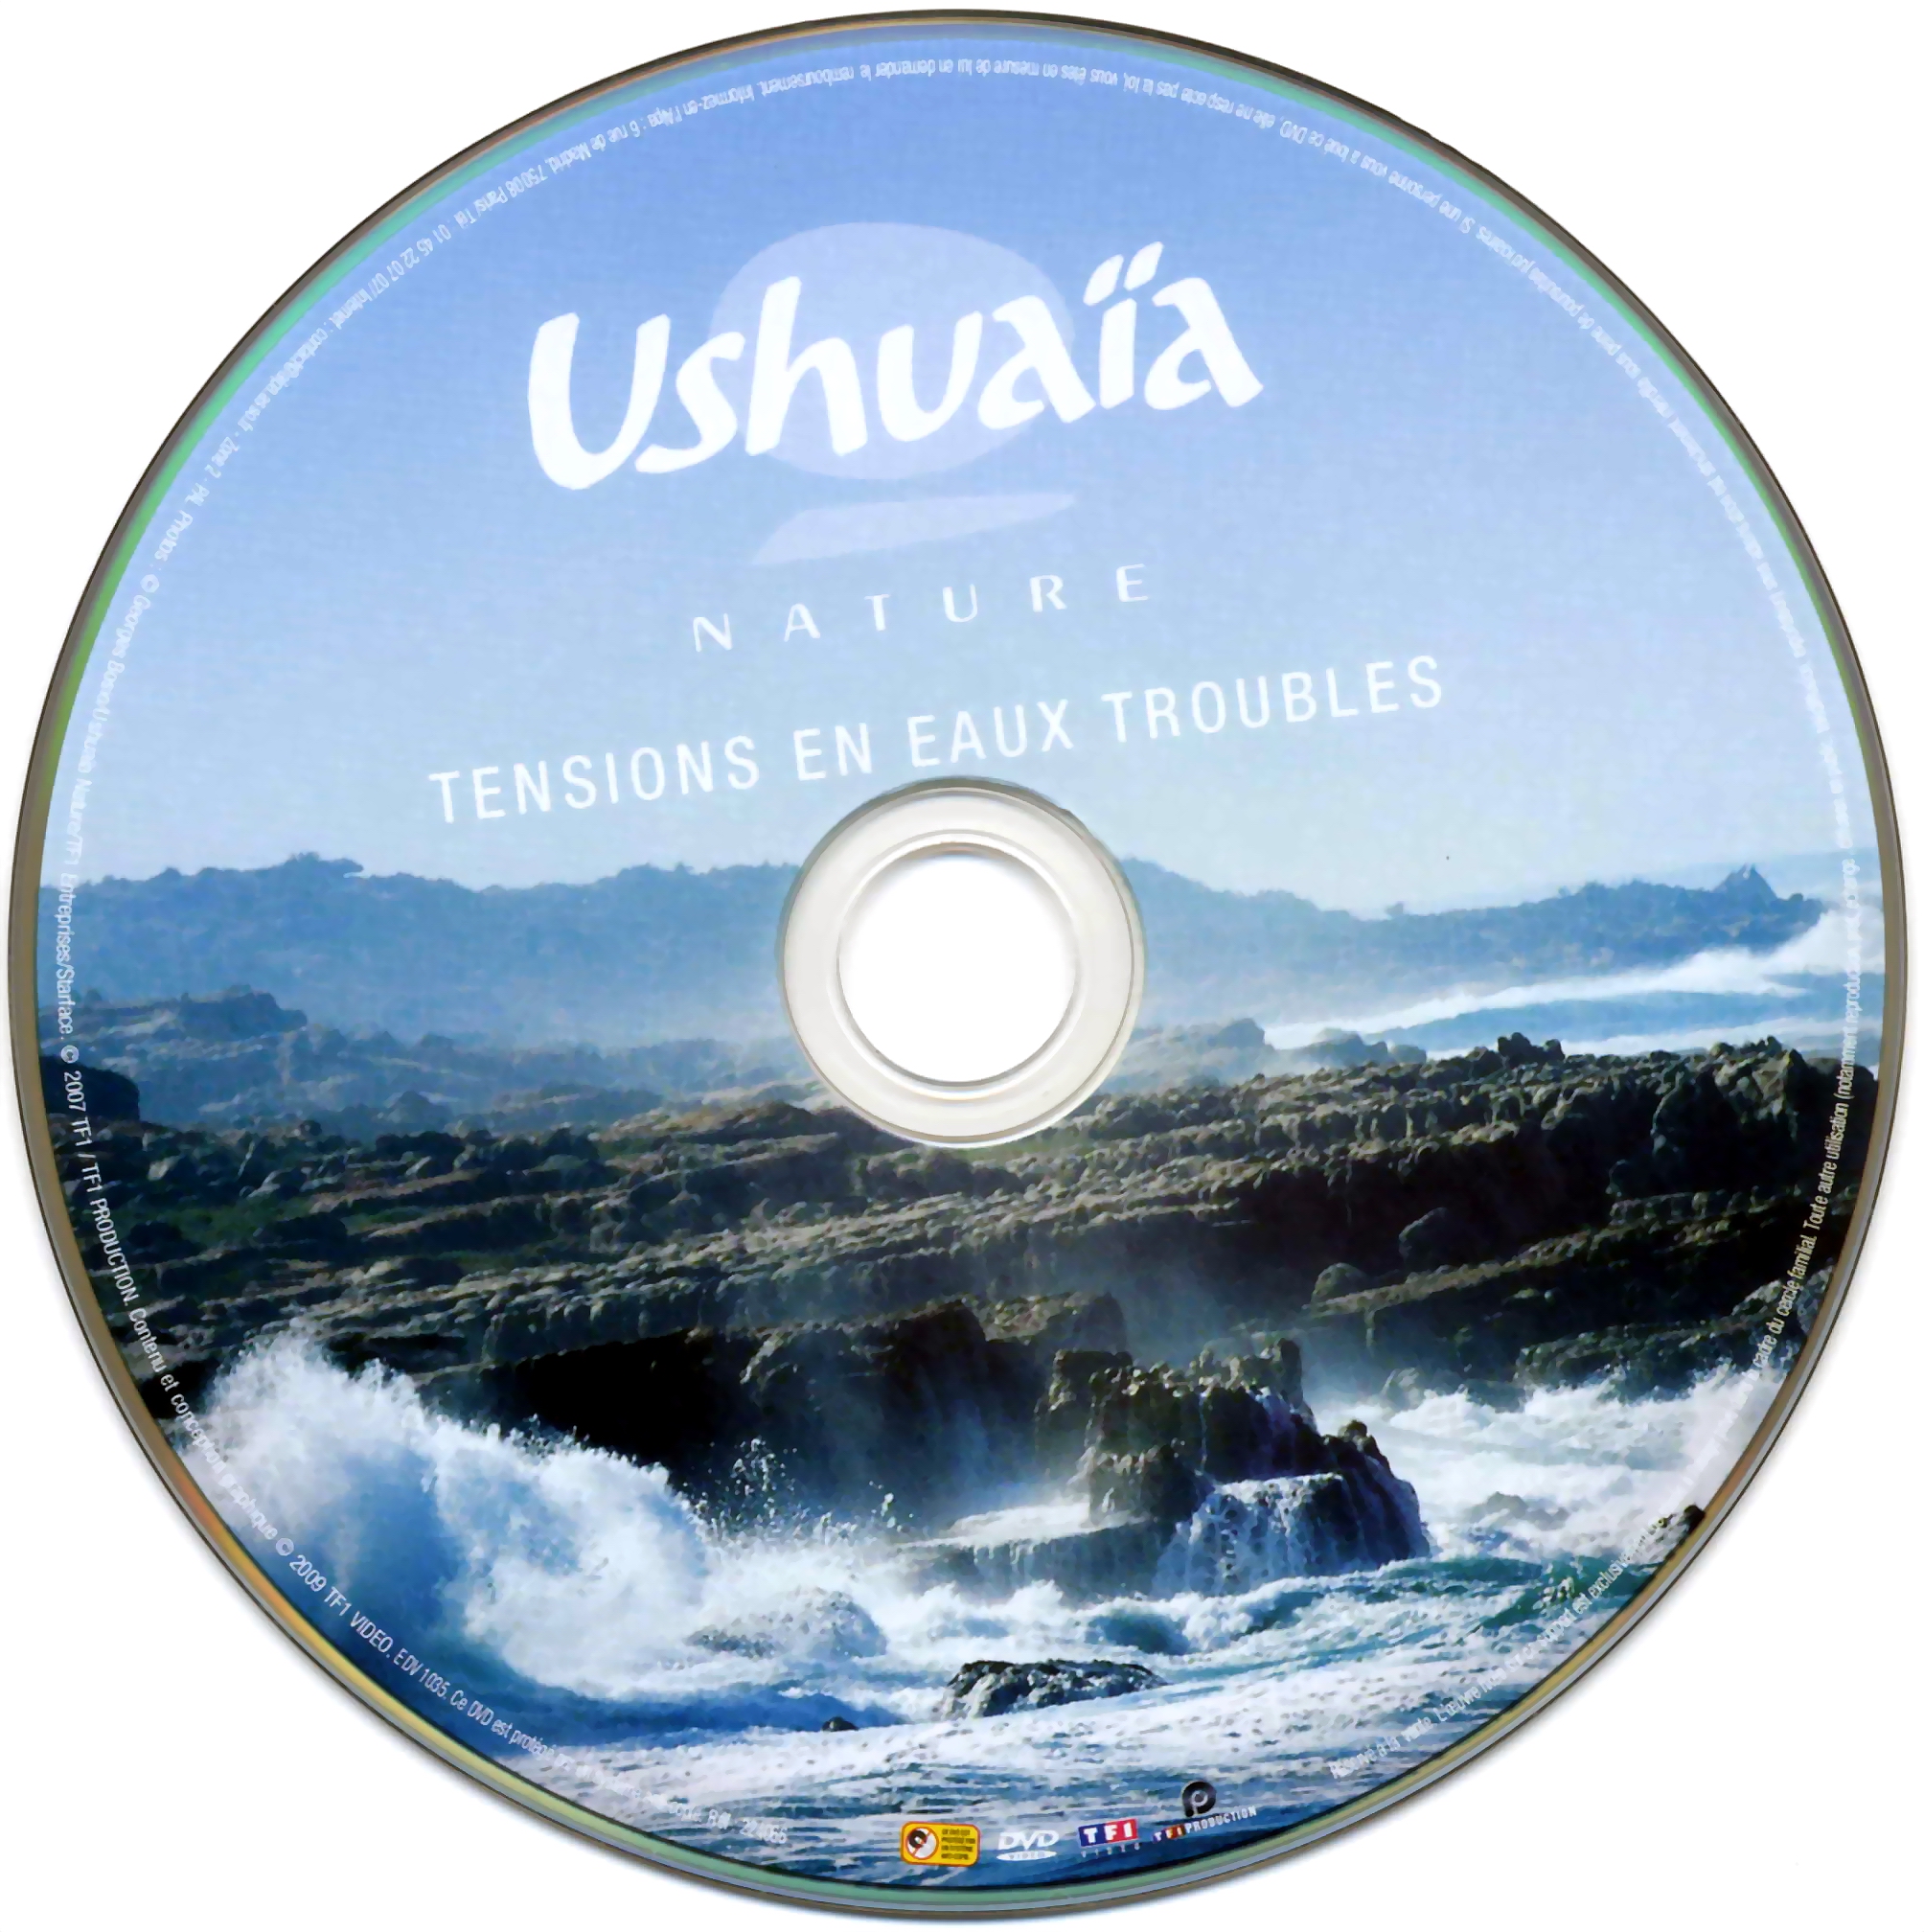 Ushuaia Nature - Tensions en eaux troubles